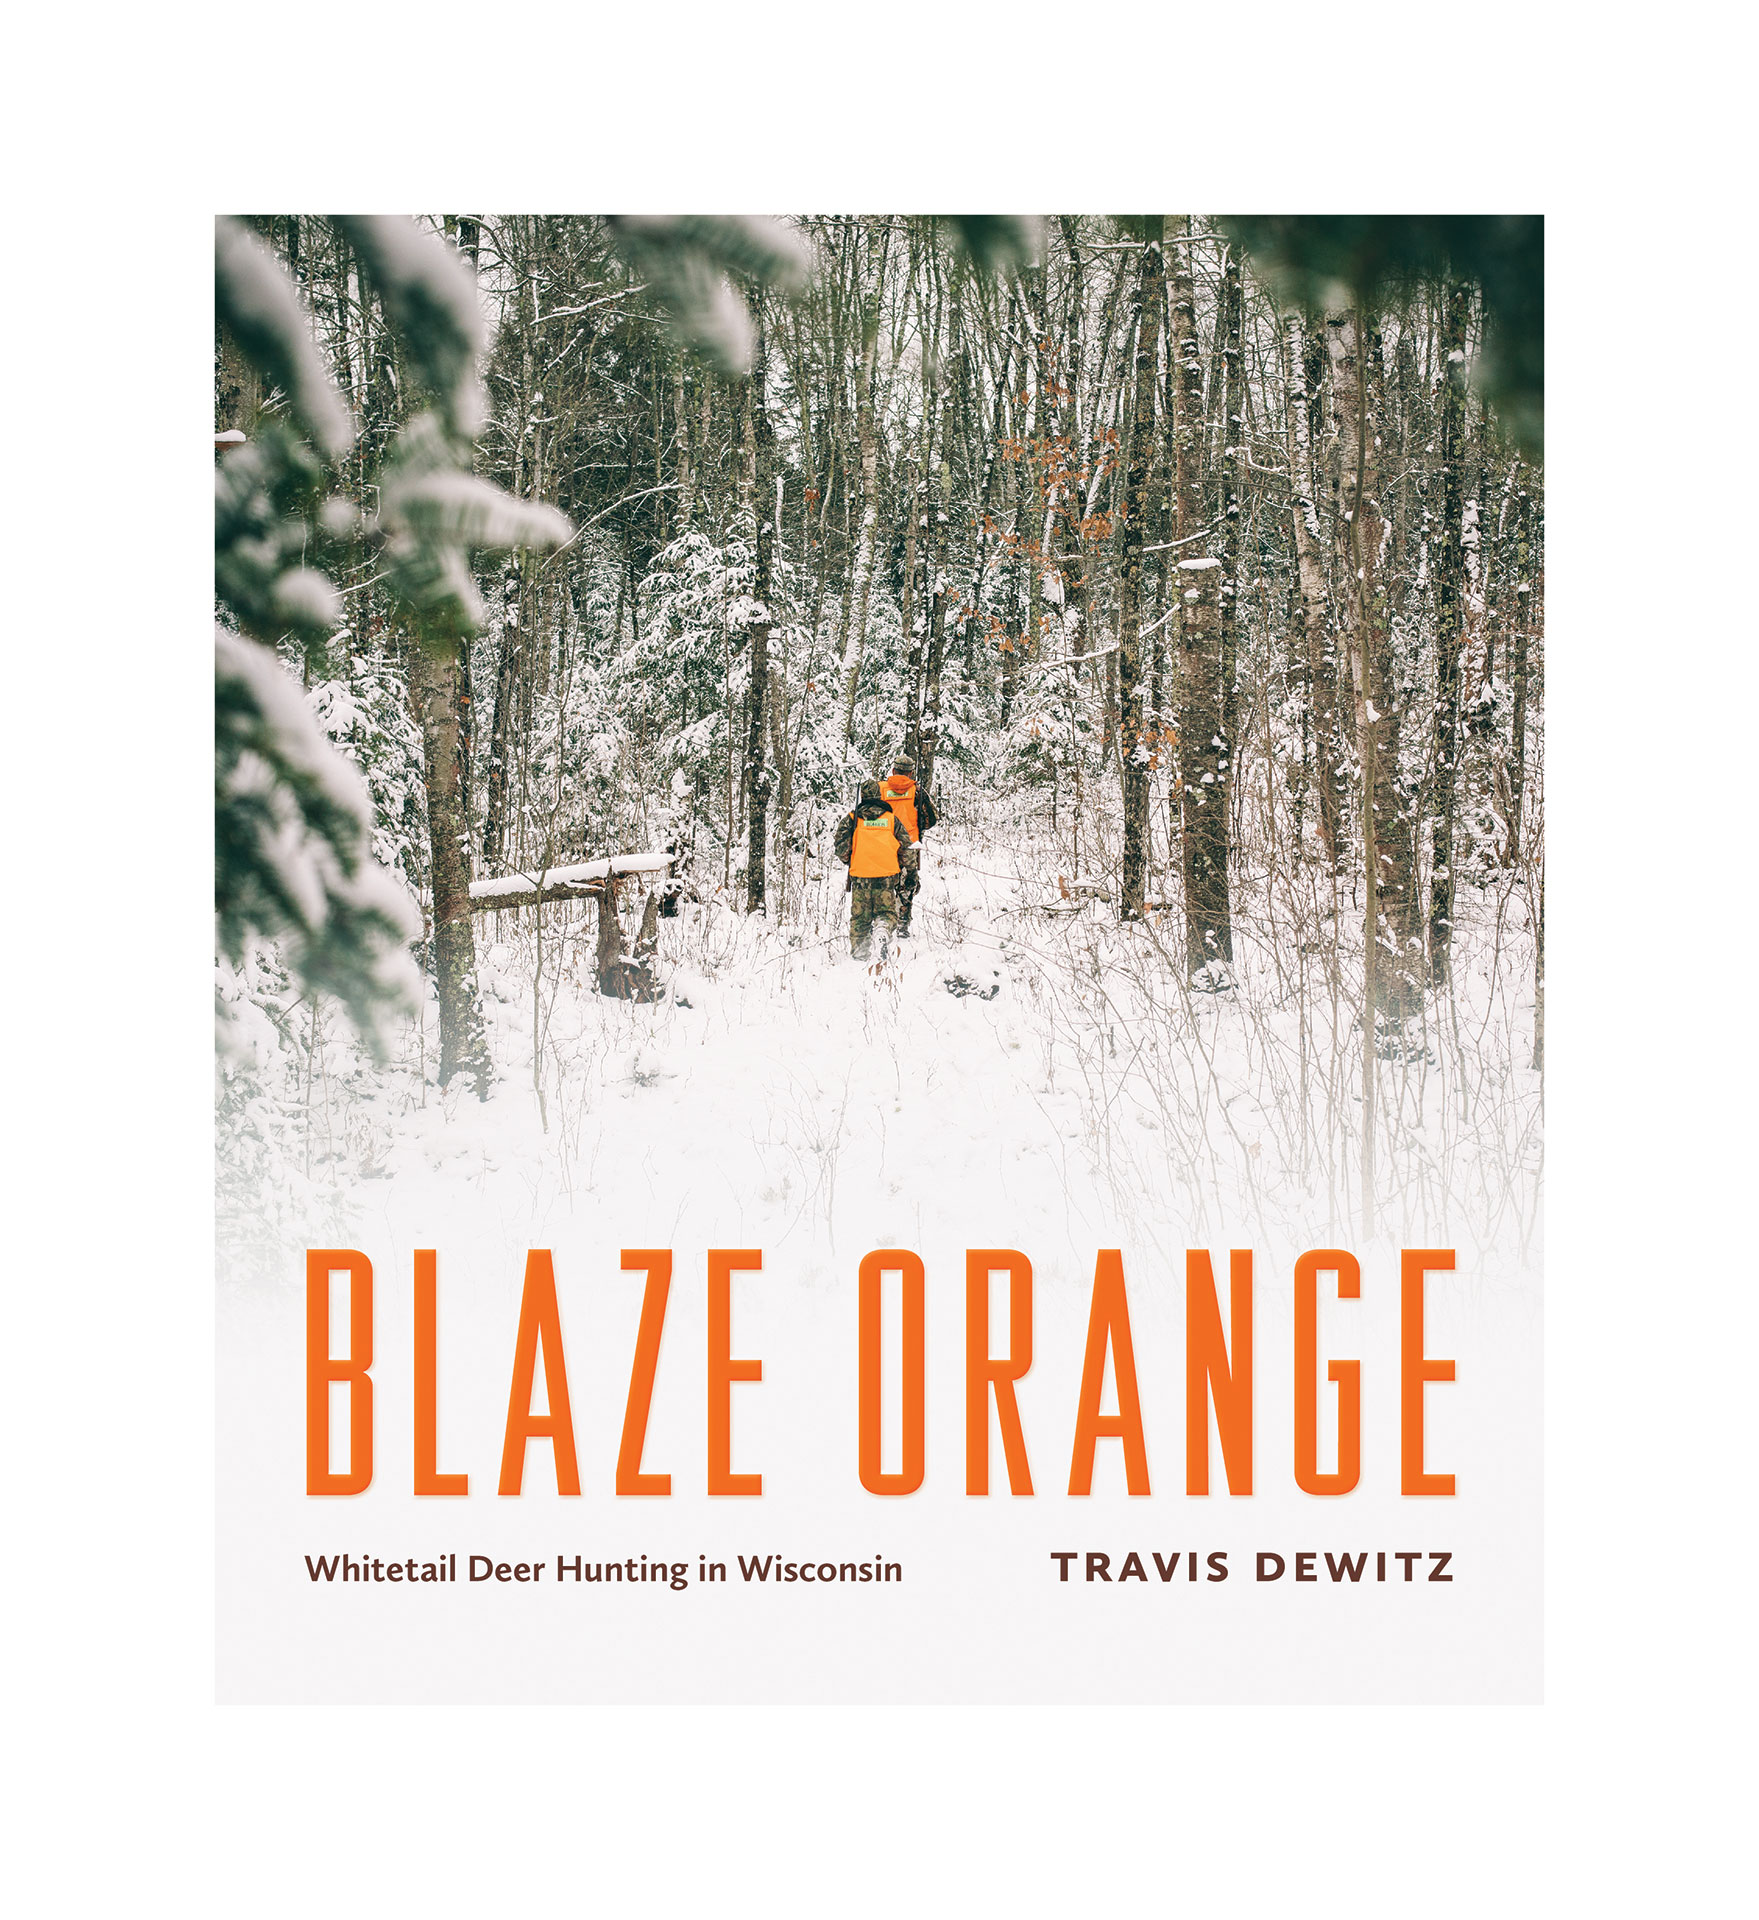 Blaze-Orange-wisconsin-deer-hunting-book-cover-dewitz